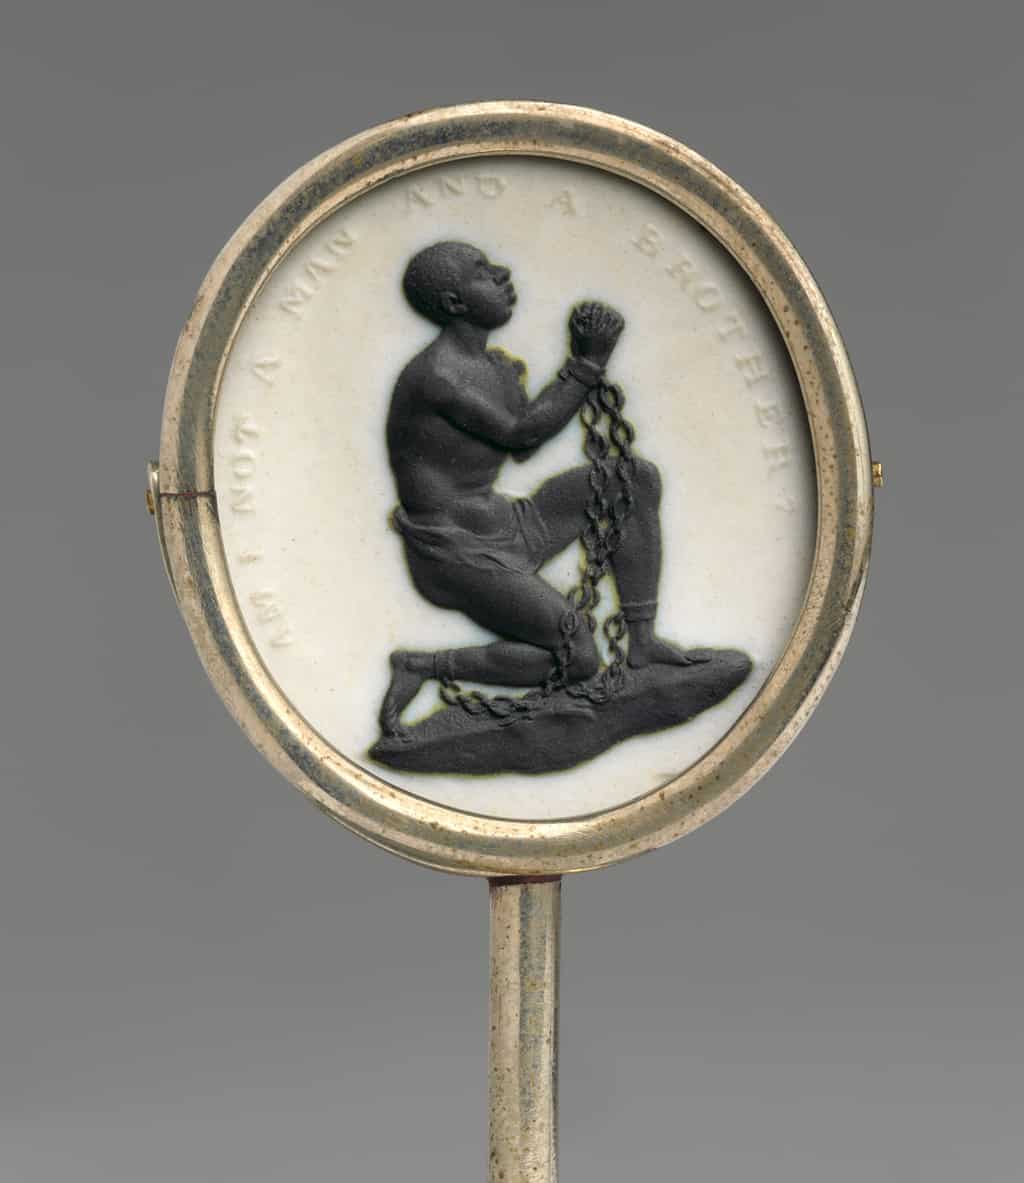 ارتدى المناهضون البريطانيون للعبودية ميداليات كهذه، للإشارة إلى اعتراضهم على العبودية. صورة: Metropolitan Museum of Art